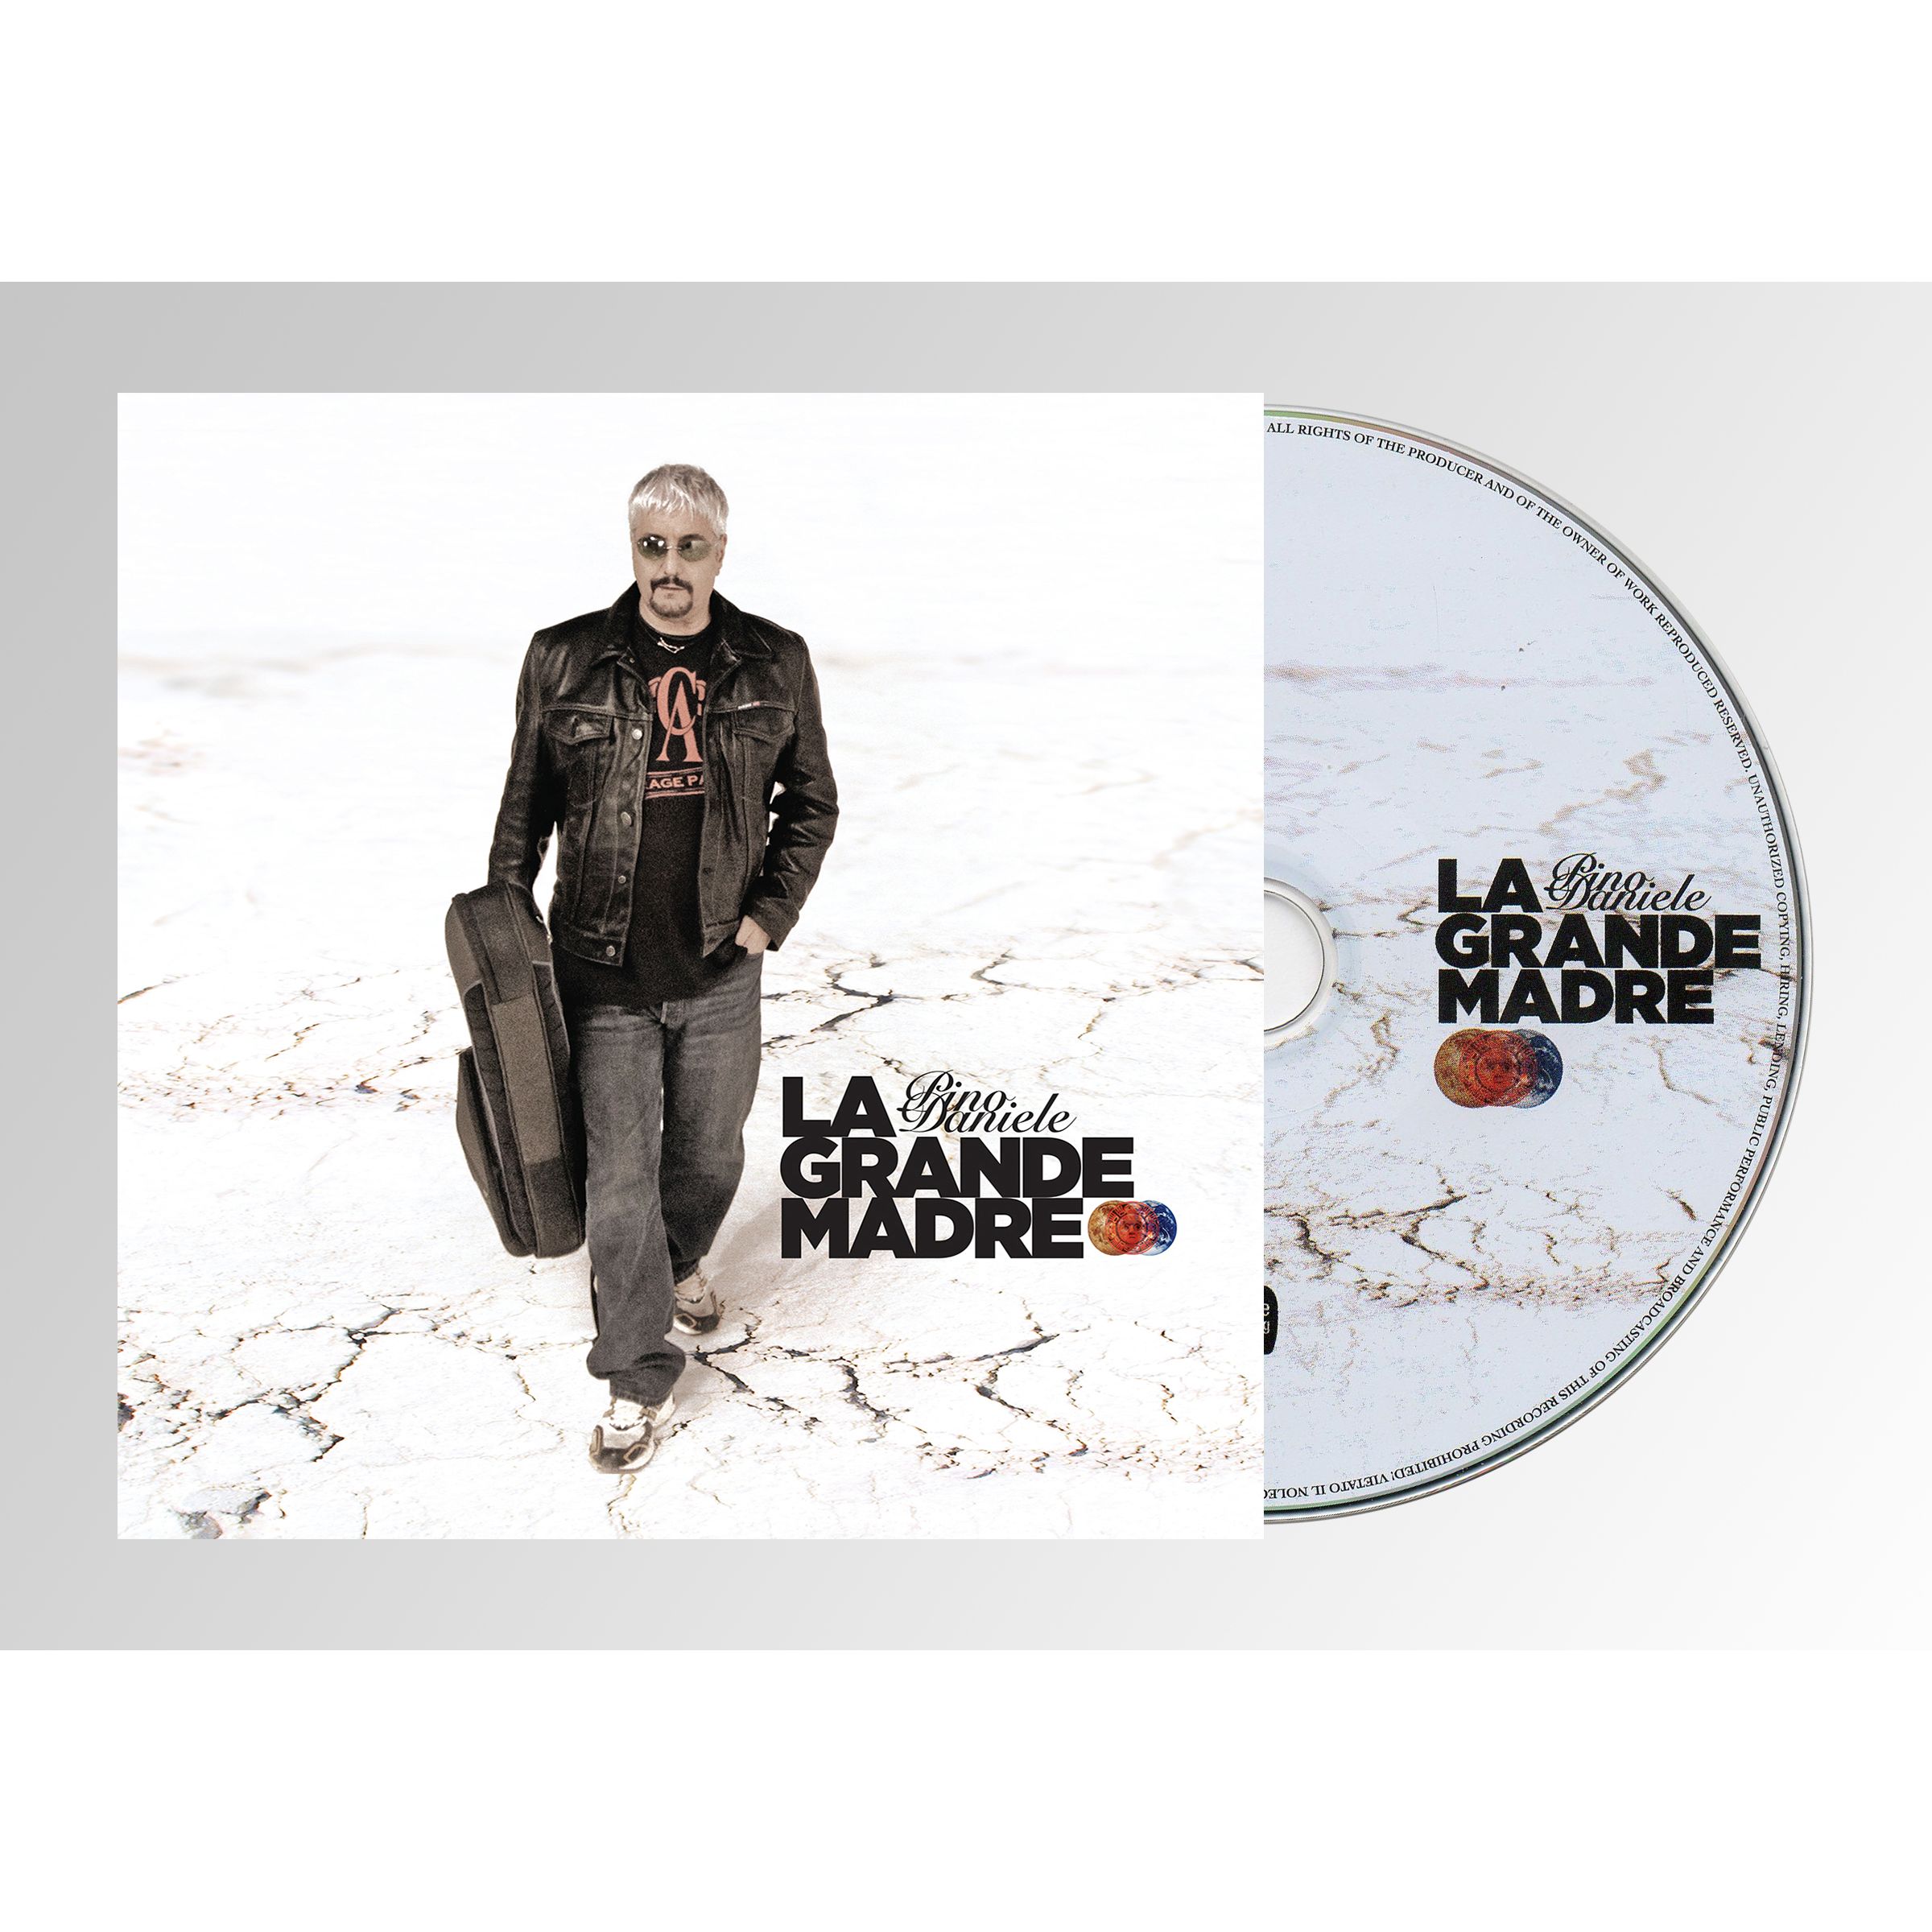 LA GRANDE MADRE - CD+LIBRETTO 80 PAG.DELUXE ED.